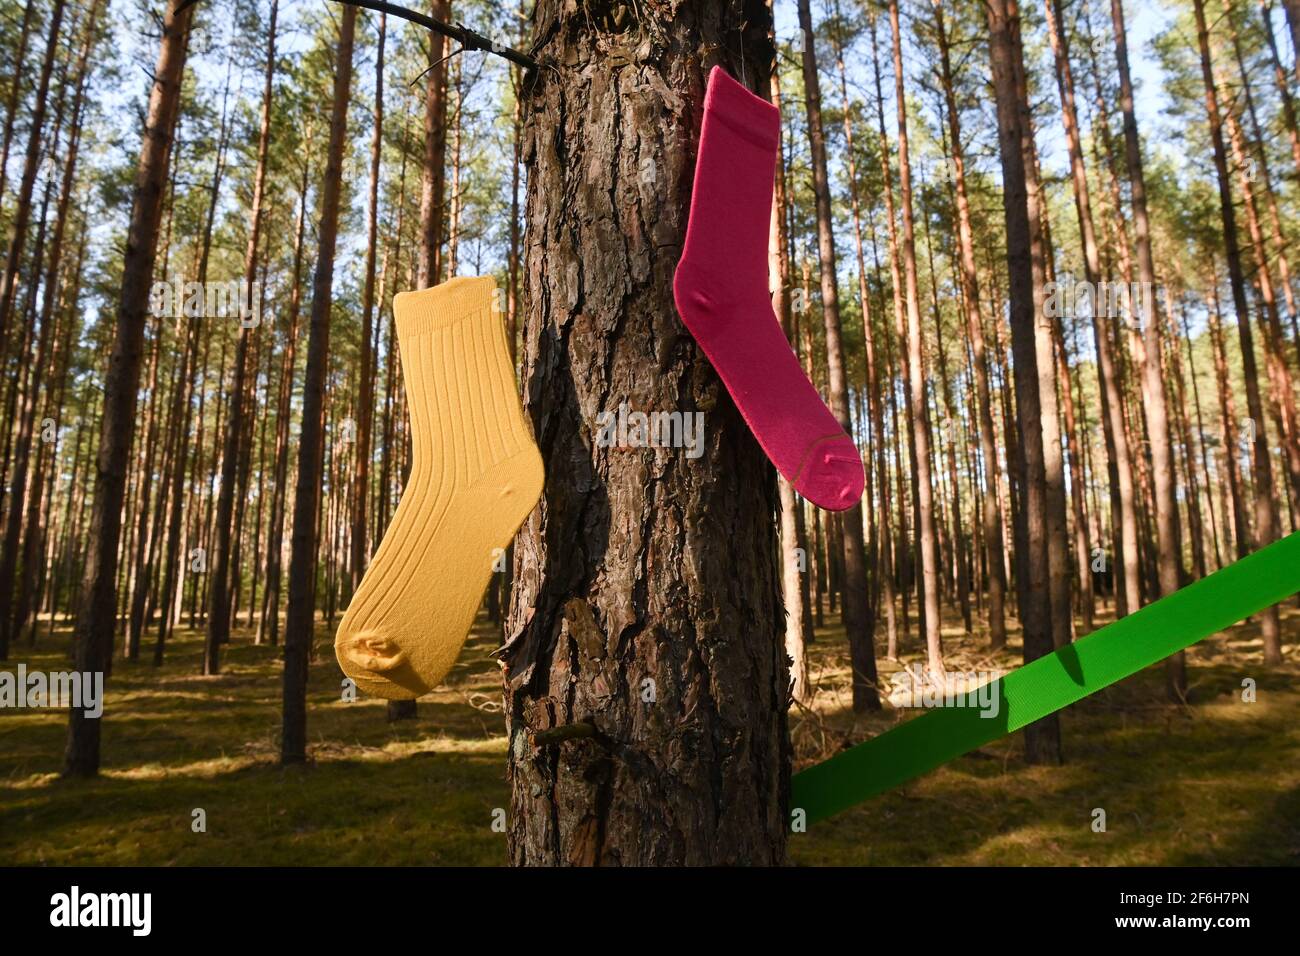 Mirow, Germania. 30 Marzo 2021. Calze colorate appendono tra gli alberi al  lancio della nuova etichetta calza sostenibile Cheerio in una foresta  vicino Mirow nel distretto del lago di Mecklenburg. L'imprenditore e